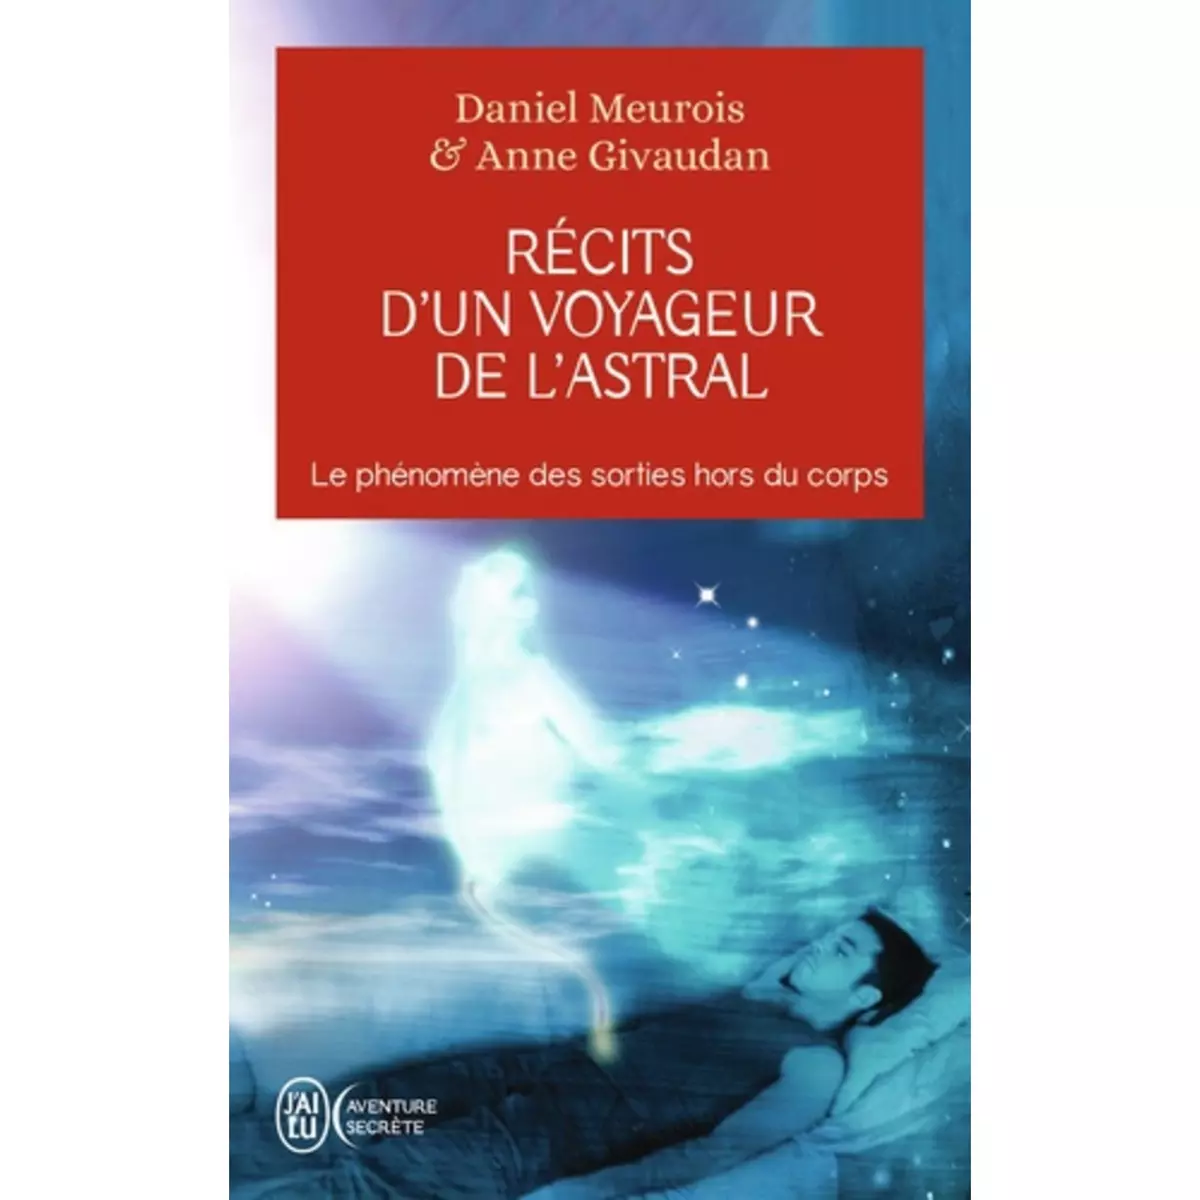  RECITS D'UN VOYAGEUR DE L'ASTRAL, Meurois Daniel